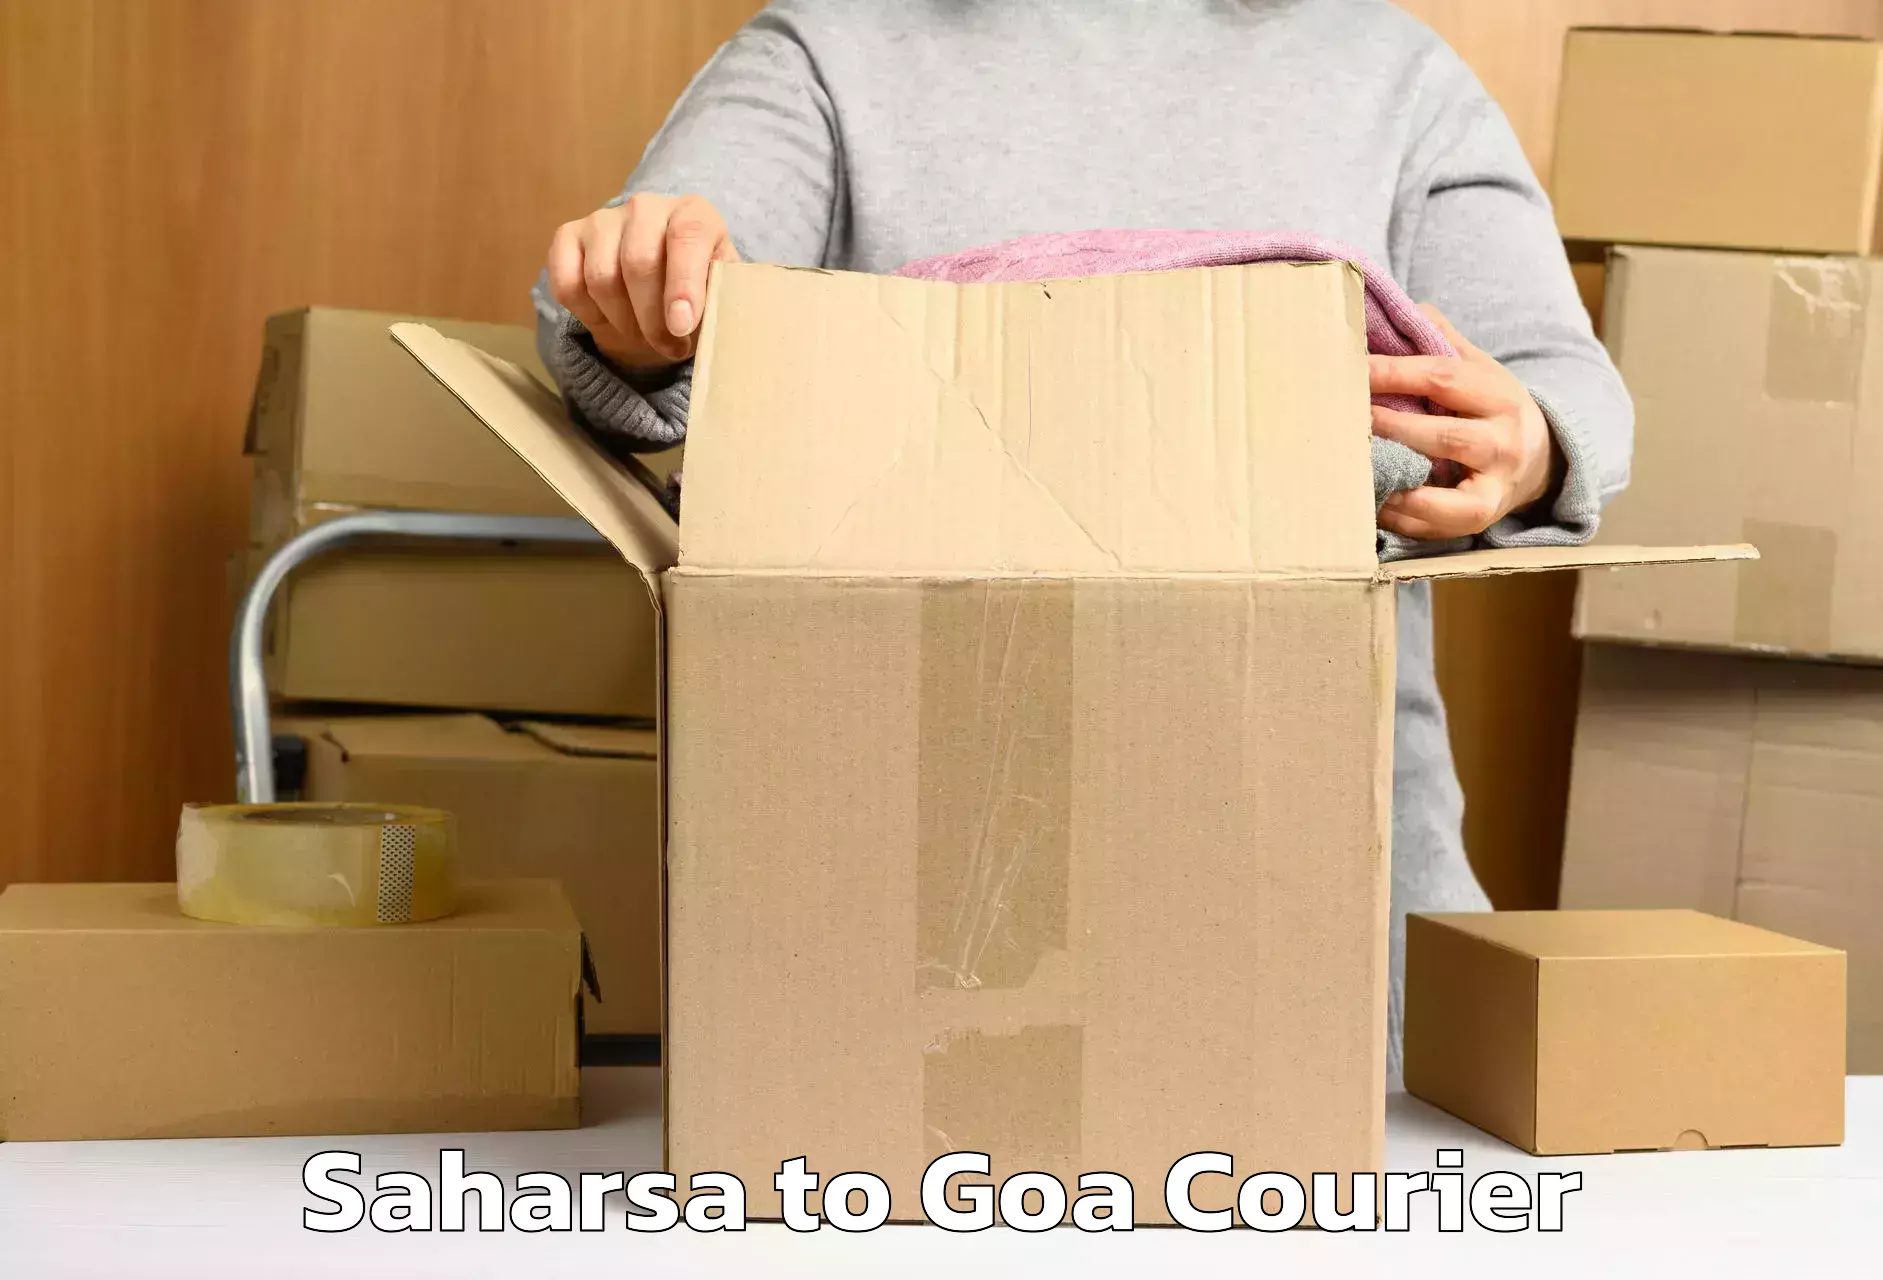 Same day luggage service Saharsa to Goa